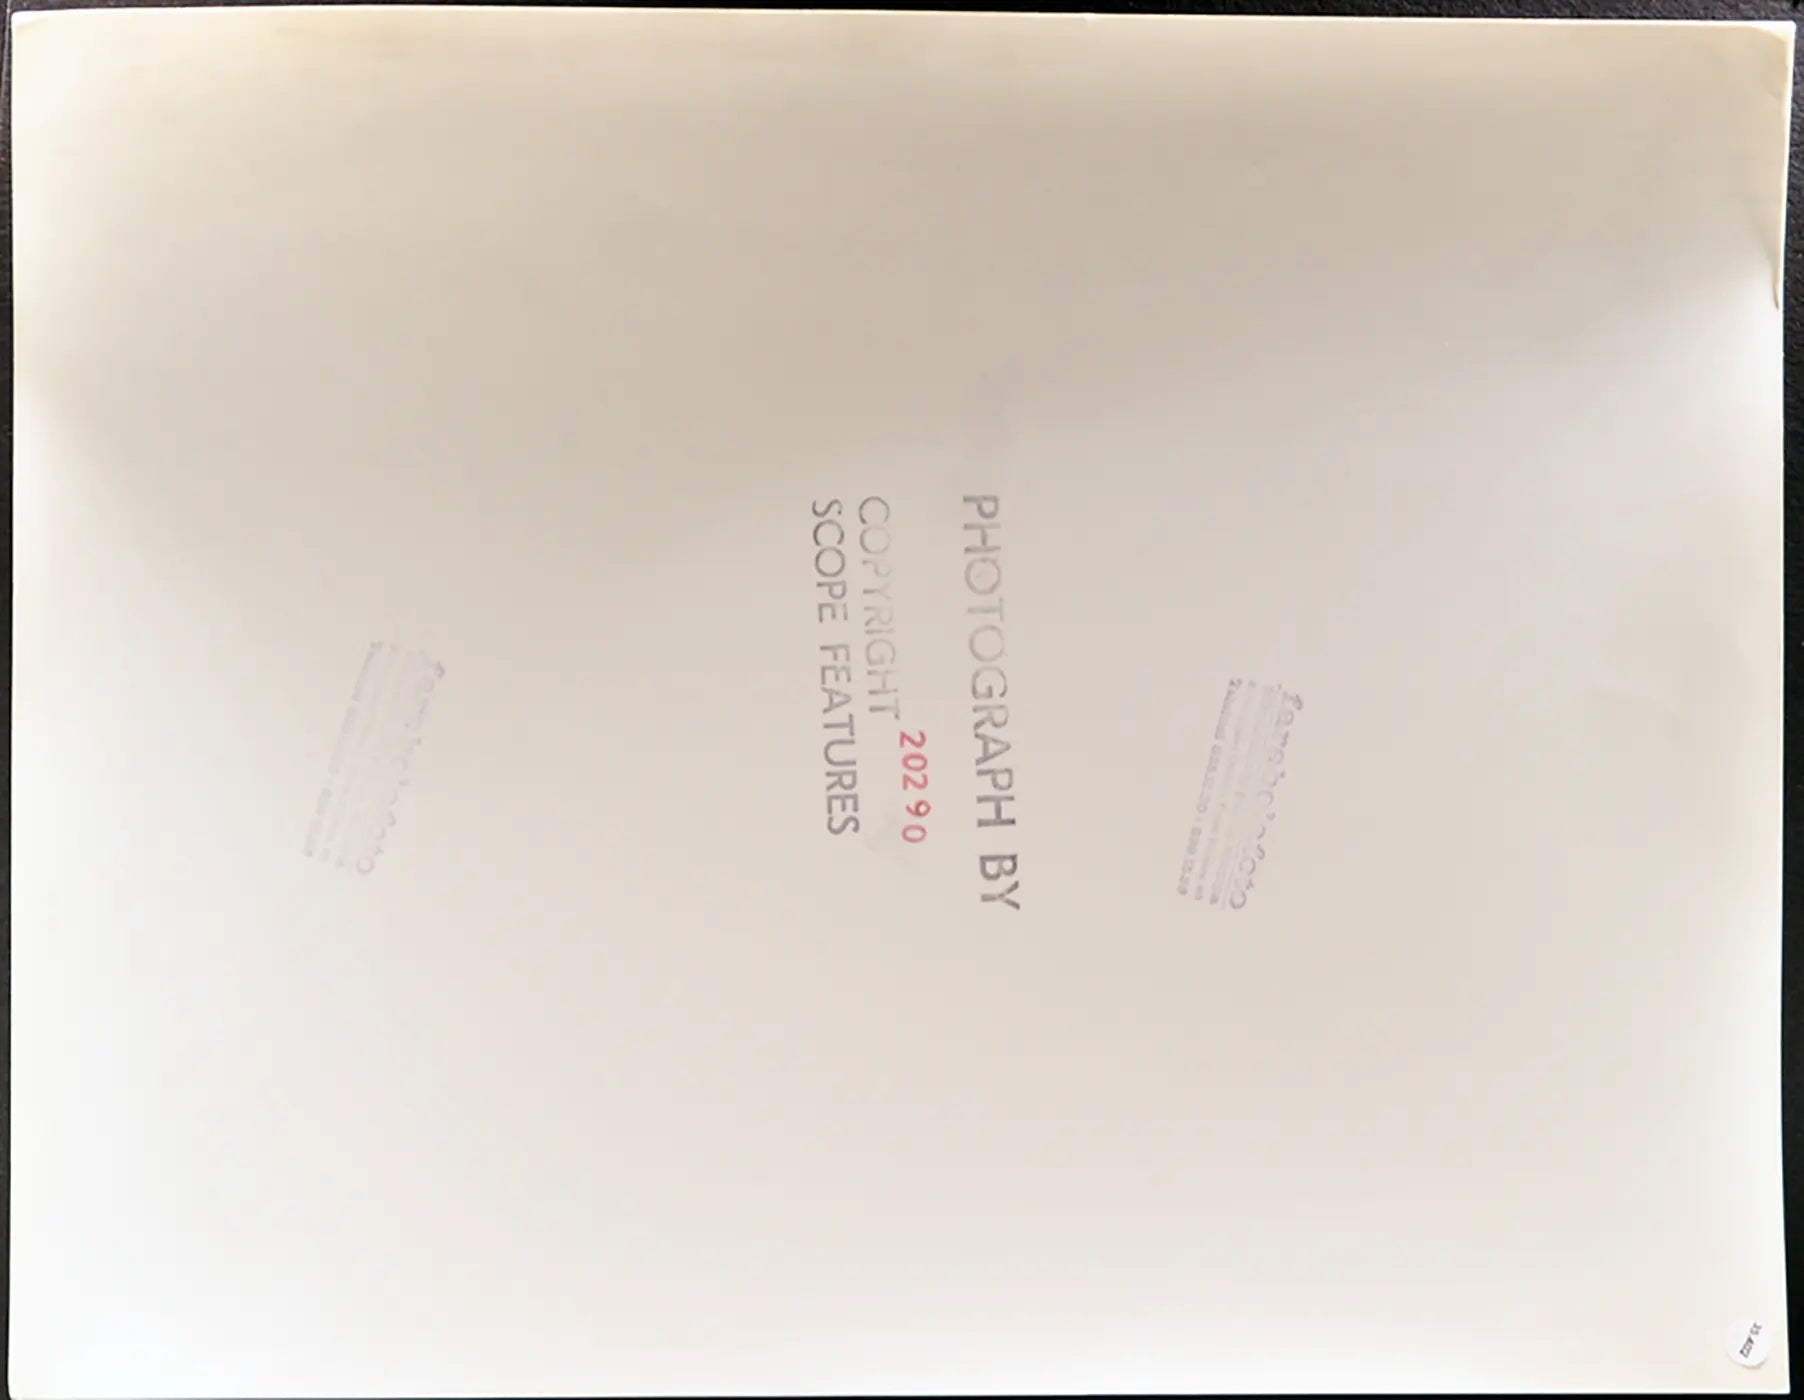 Puledro di razza Caspian Ft 35402 - Stampa 30x34 cm - Farabola Stampa ai sali d'argento